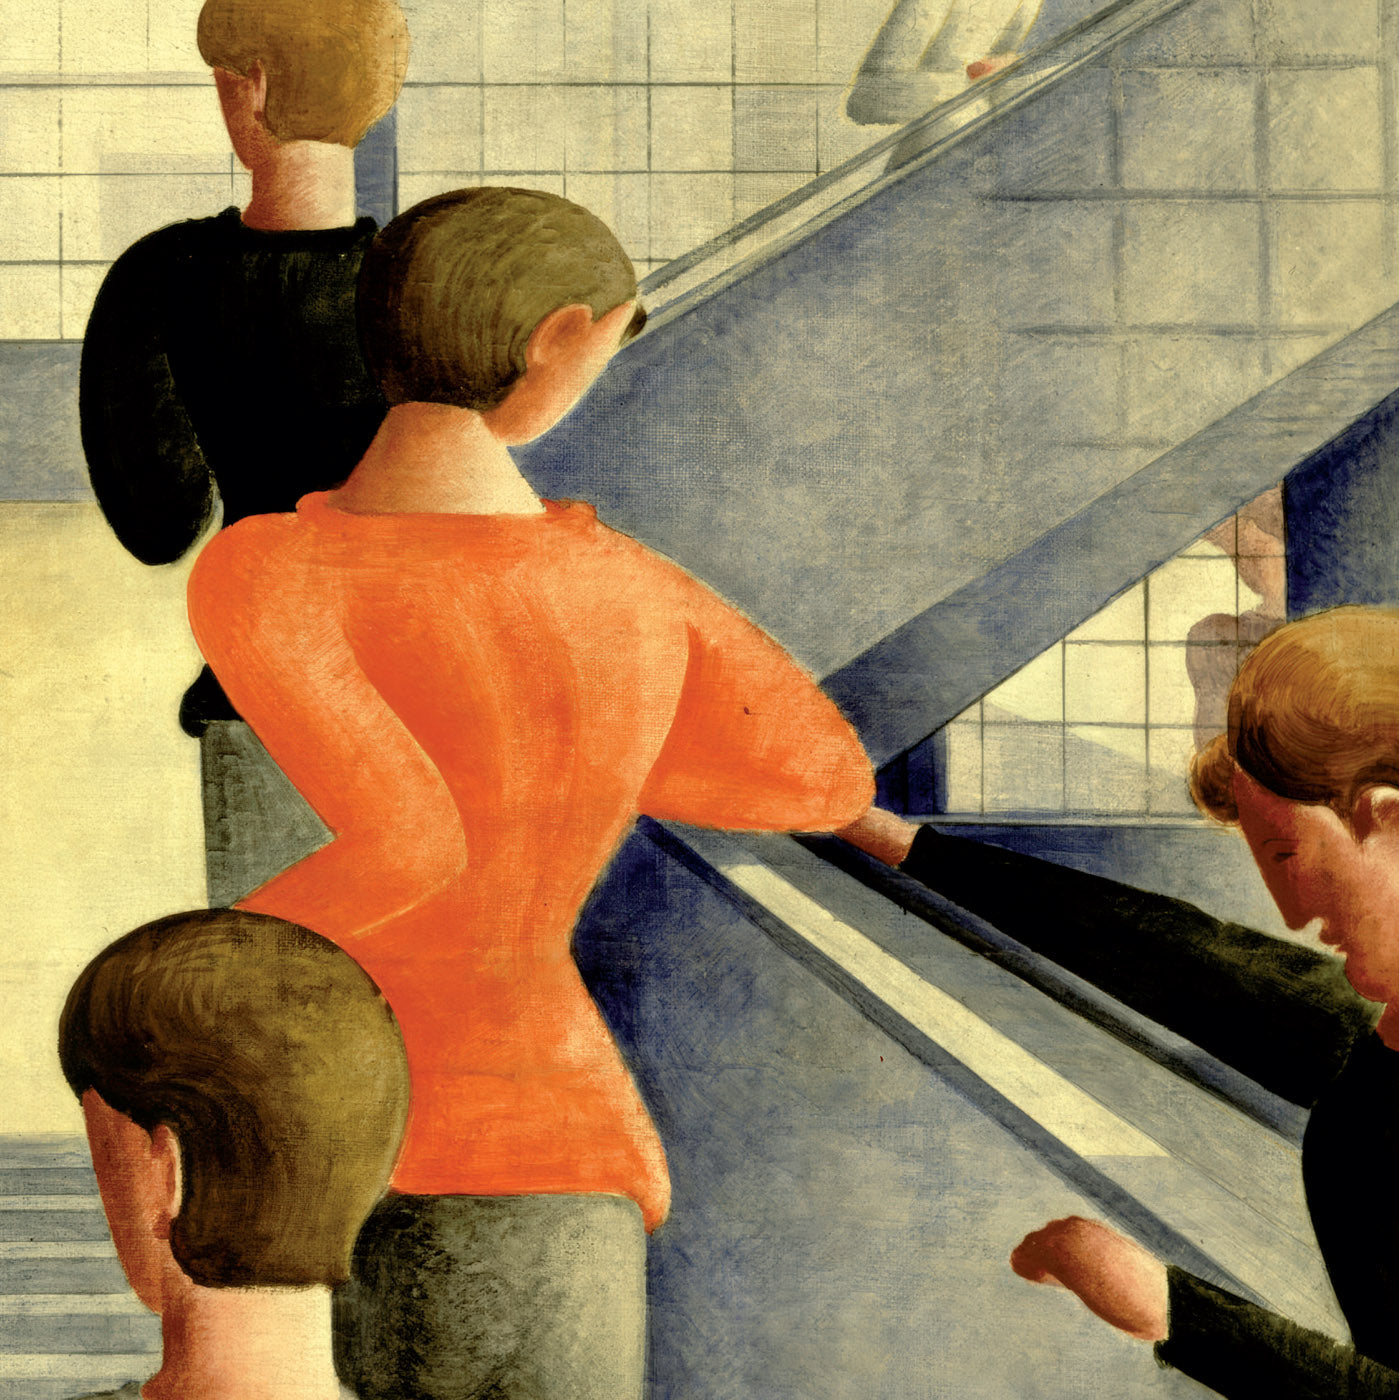 Oskar Schlemmer Bauhaus Steps Poster